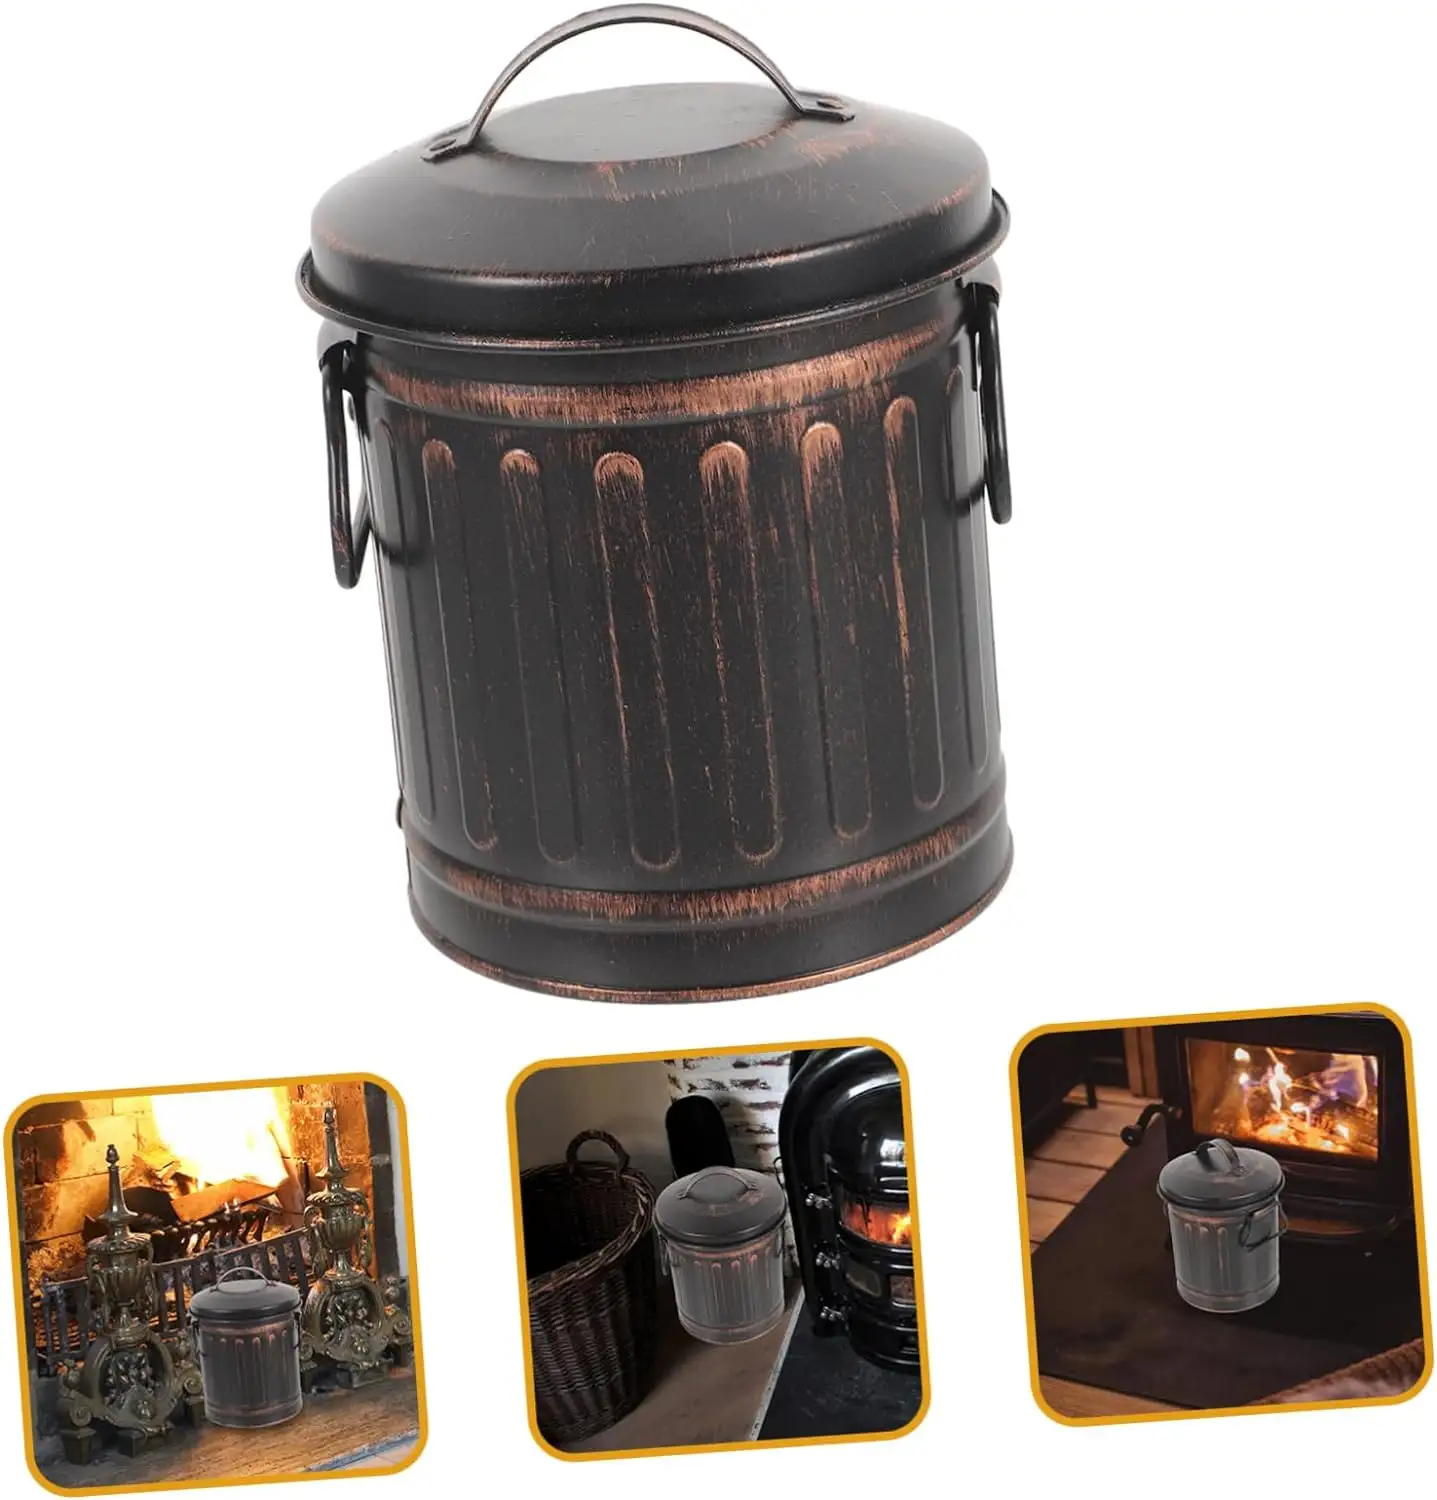 Recipiente de basura retro con tapa, lata de almacenamiento negra de hierro fijo retro, barril de chimenea adecuado para cenizas, almacenamiento de carbón interior Ba